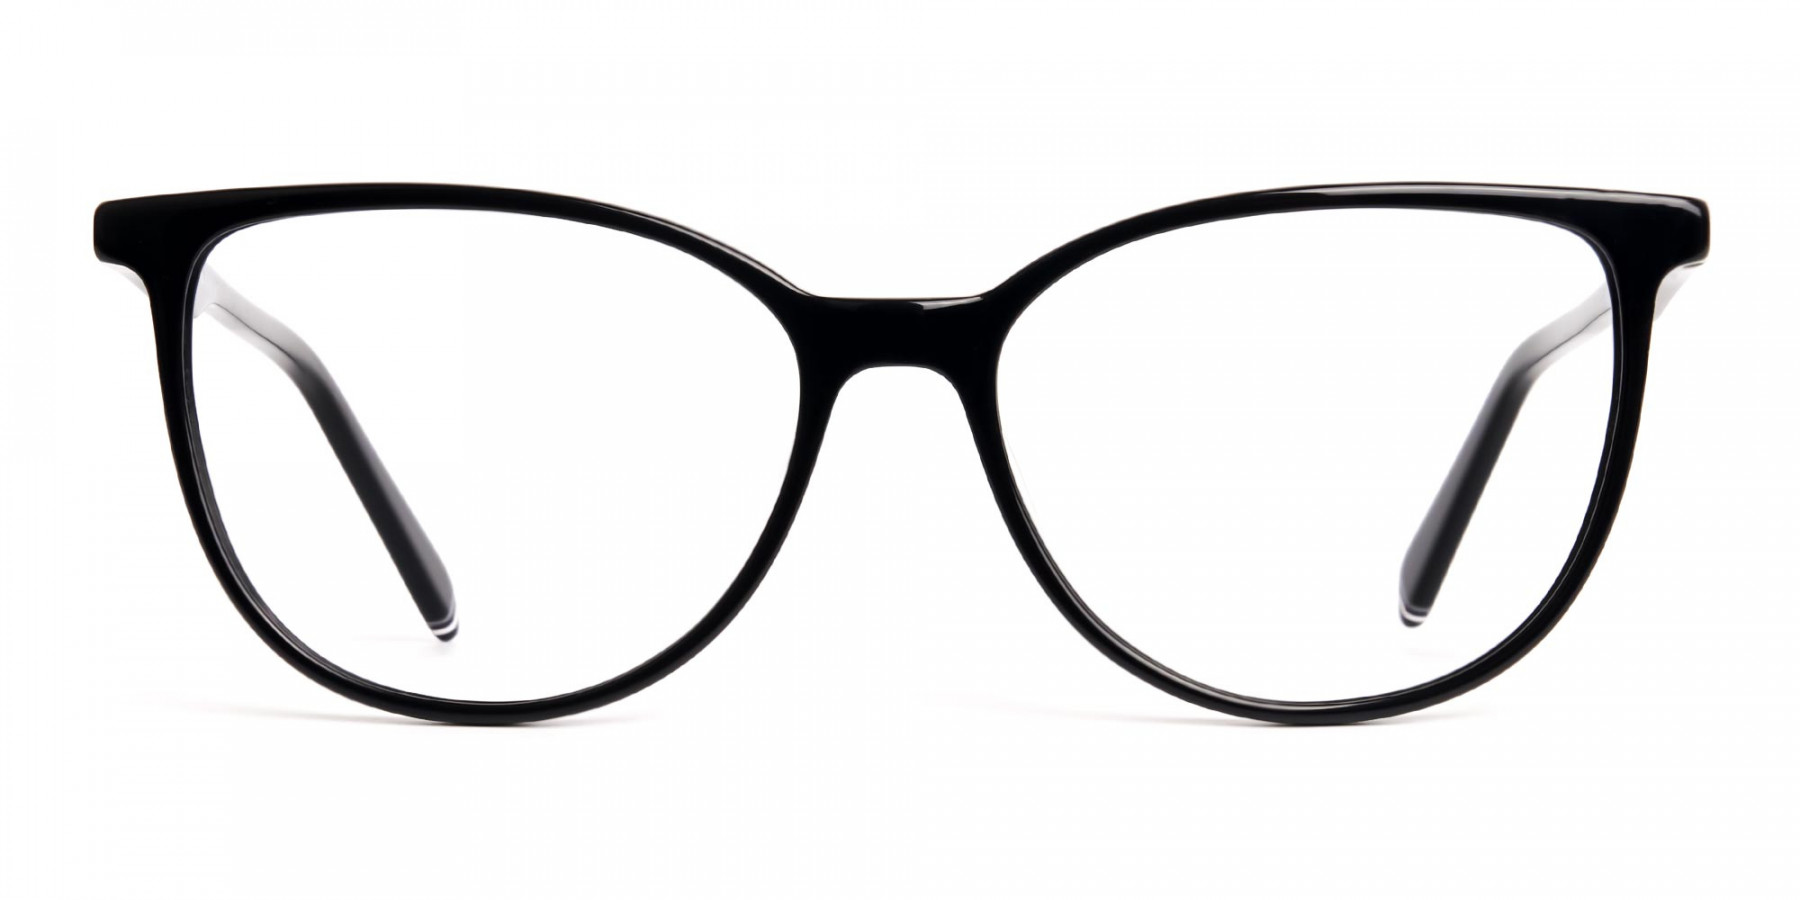 Glossy-Black-Cat-eye-Glasses-Frames-1